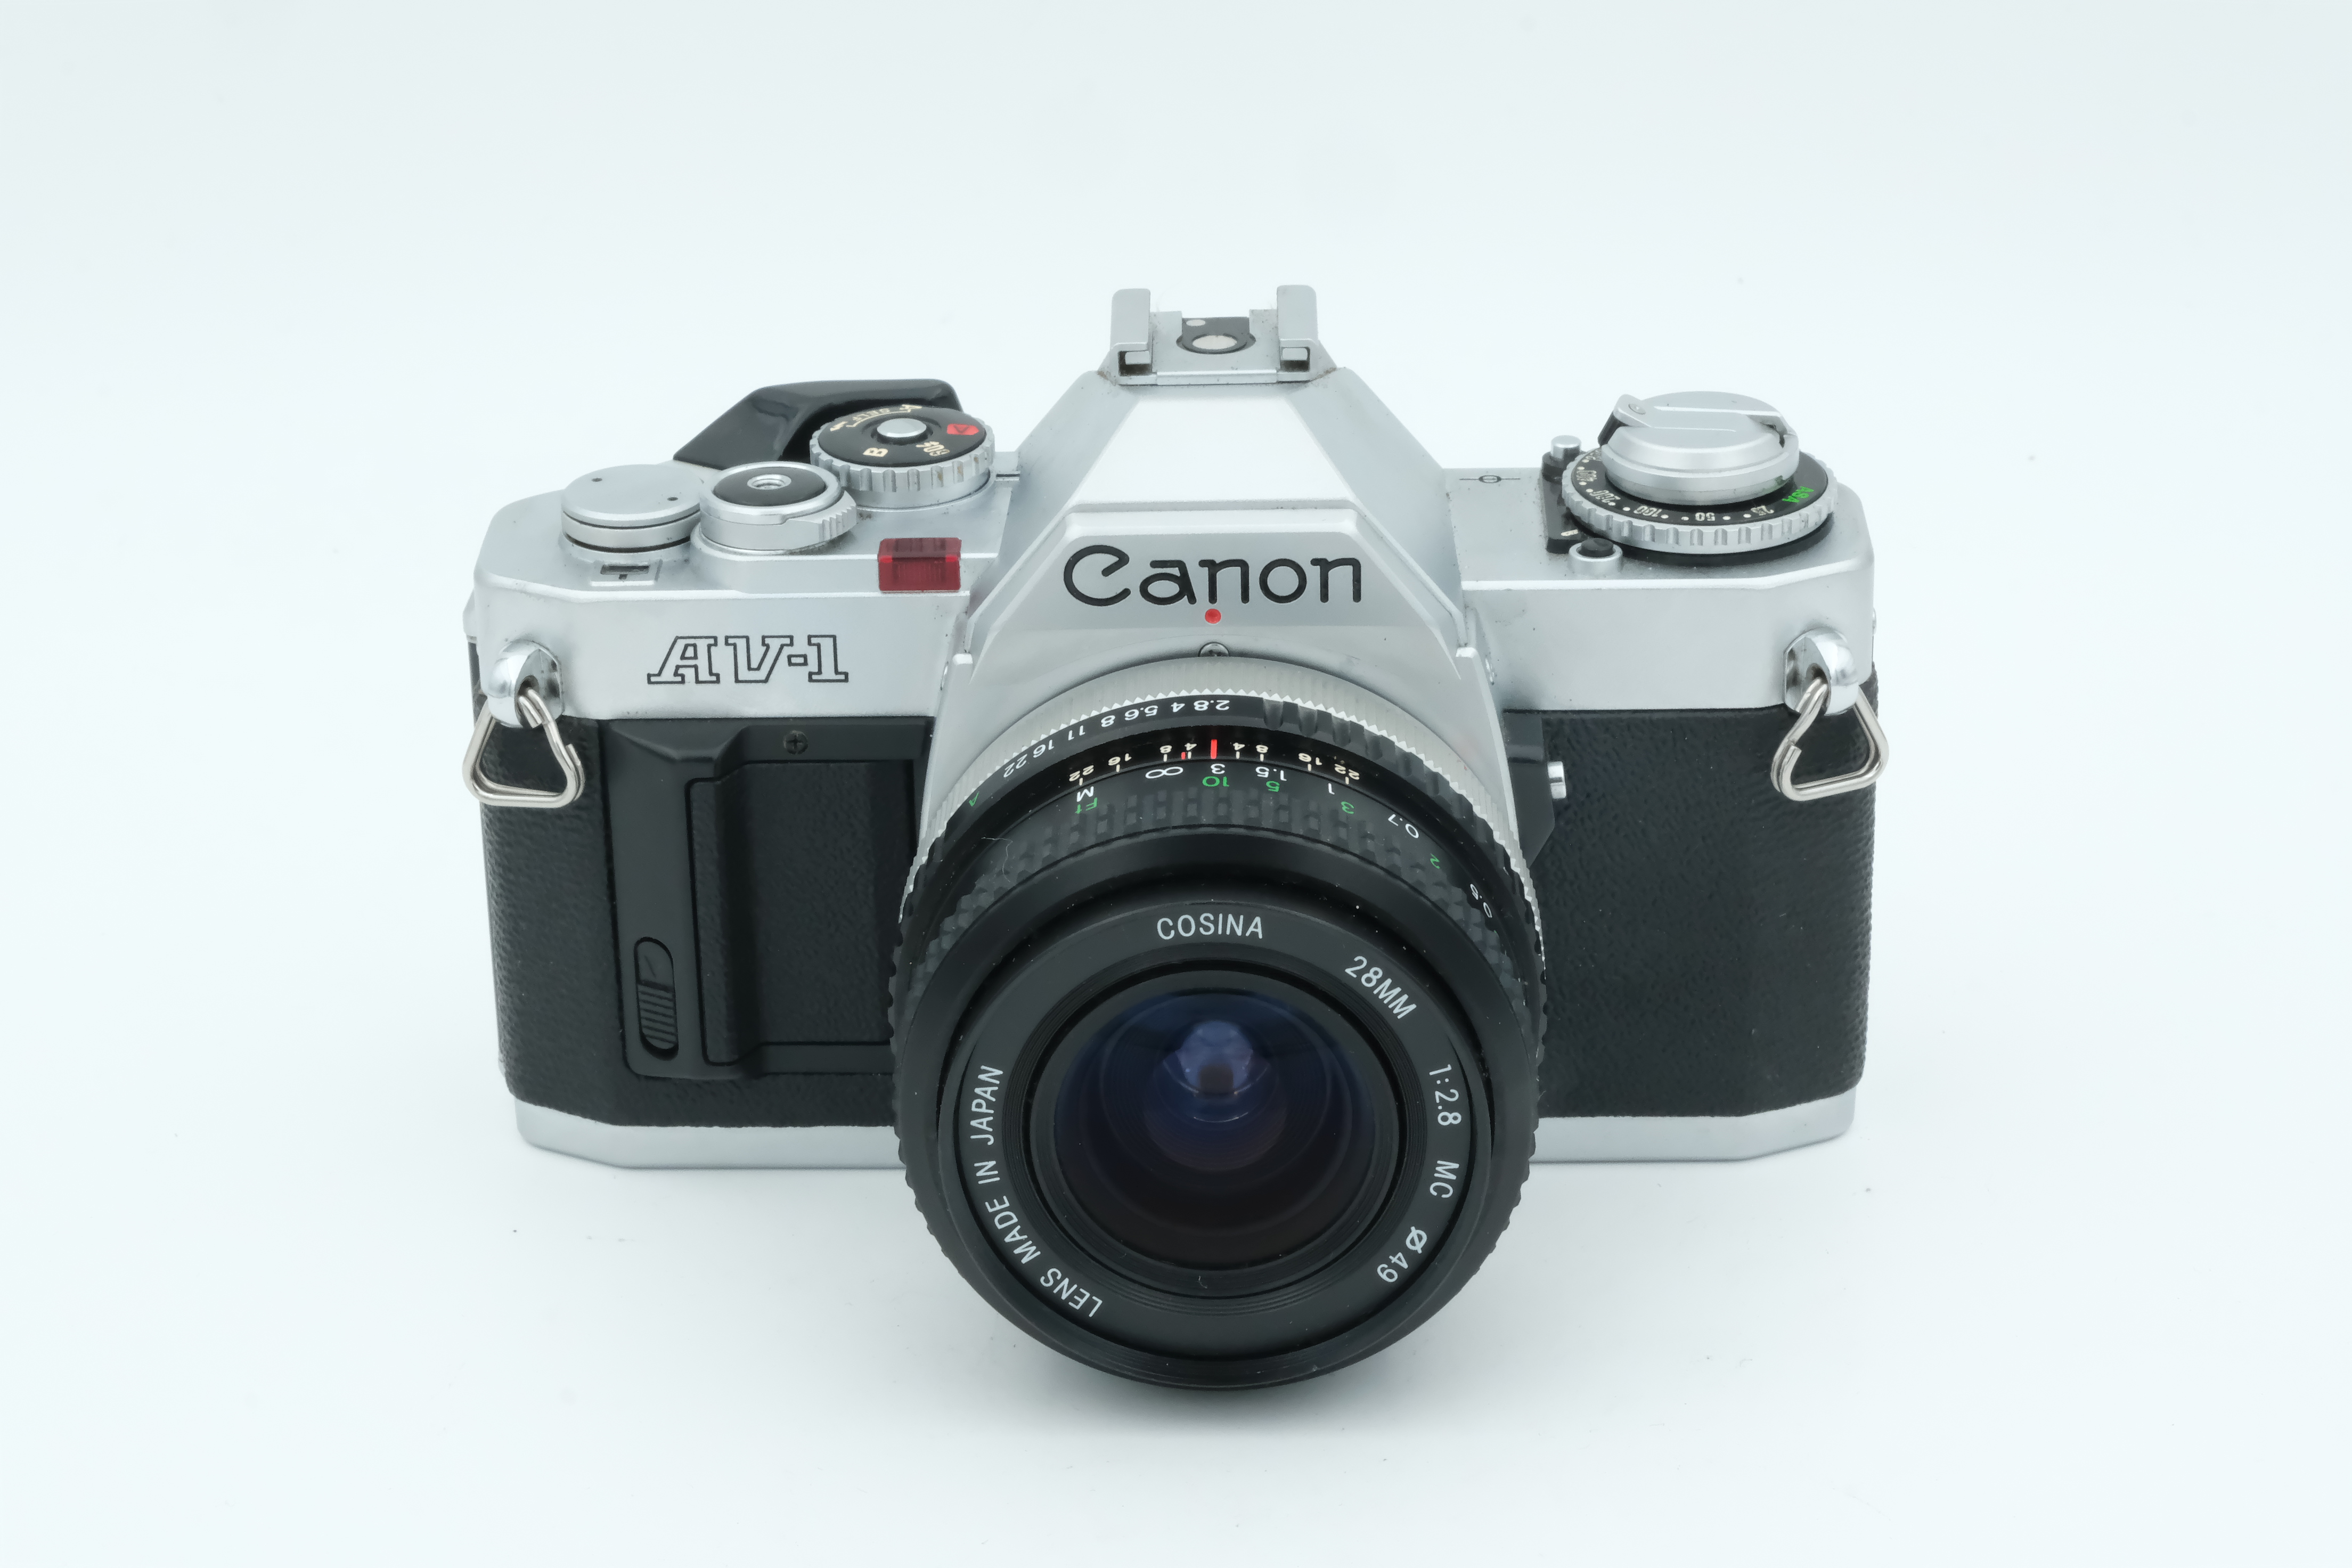 Canon AV-1 + Cosina 28mm 2,8 Bild 01